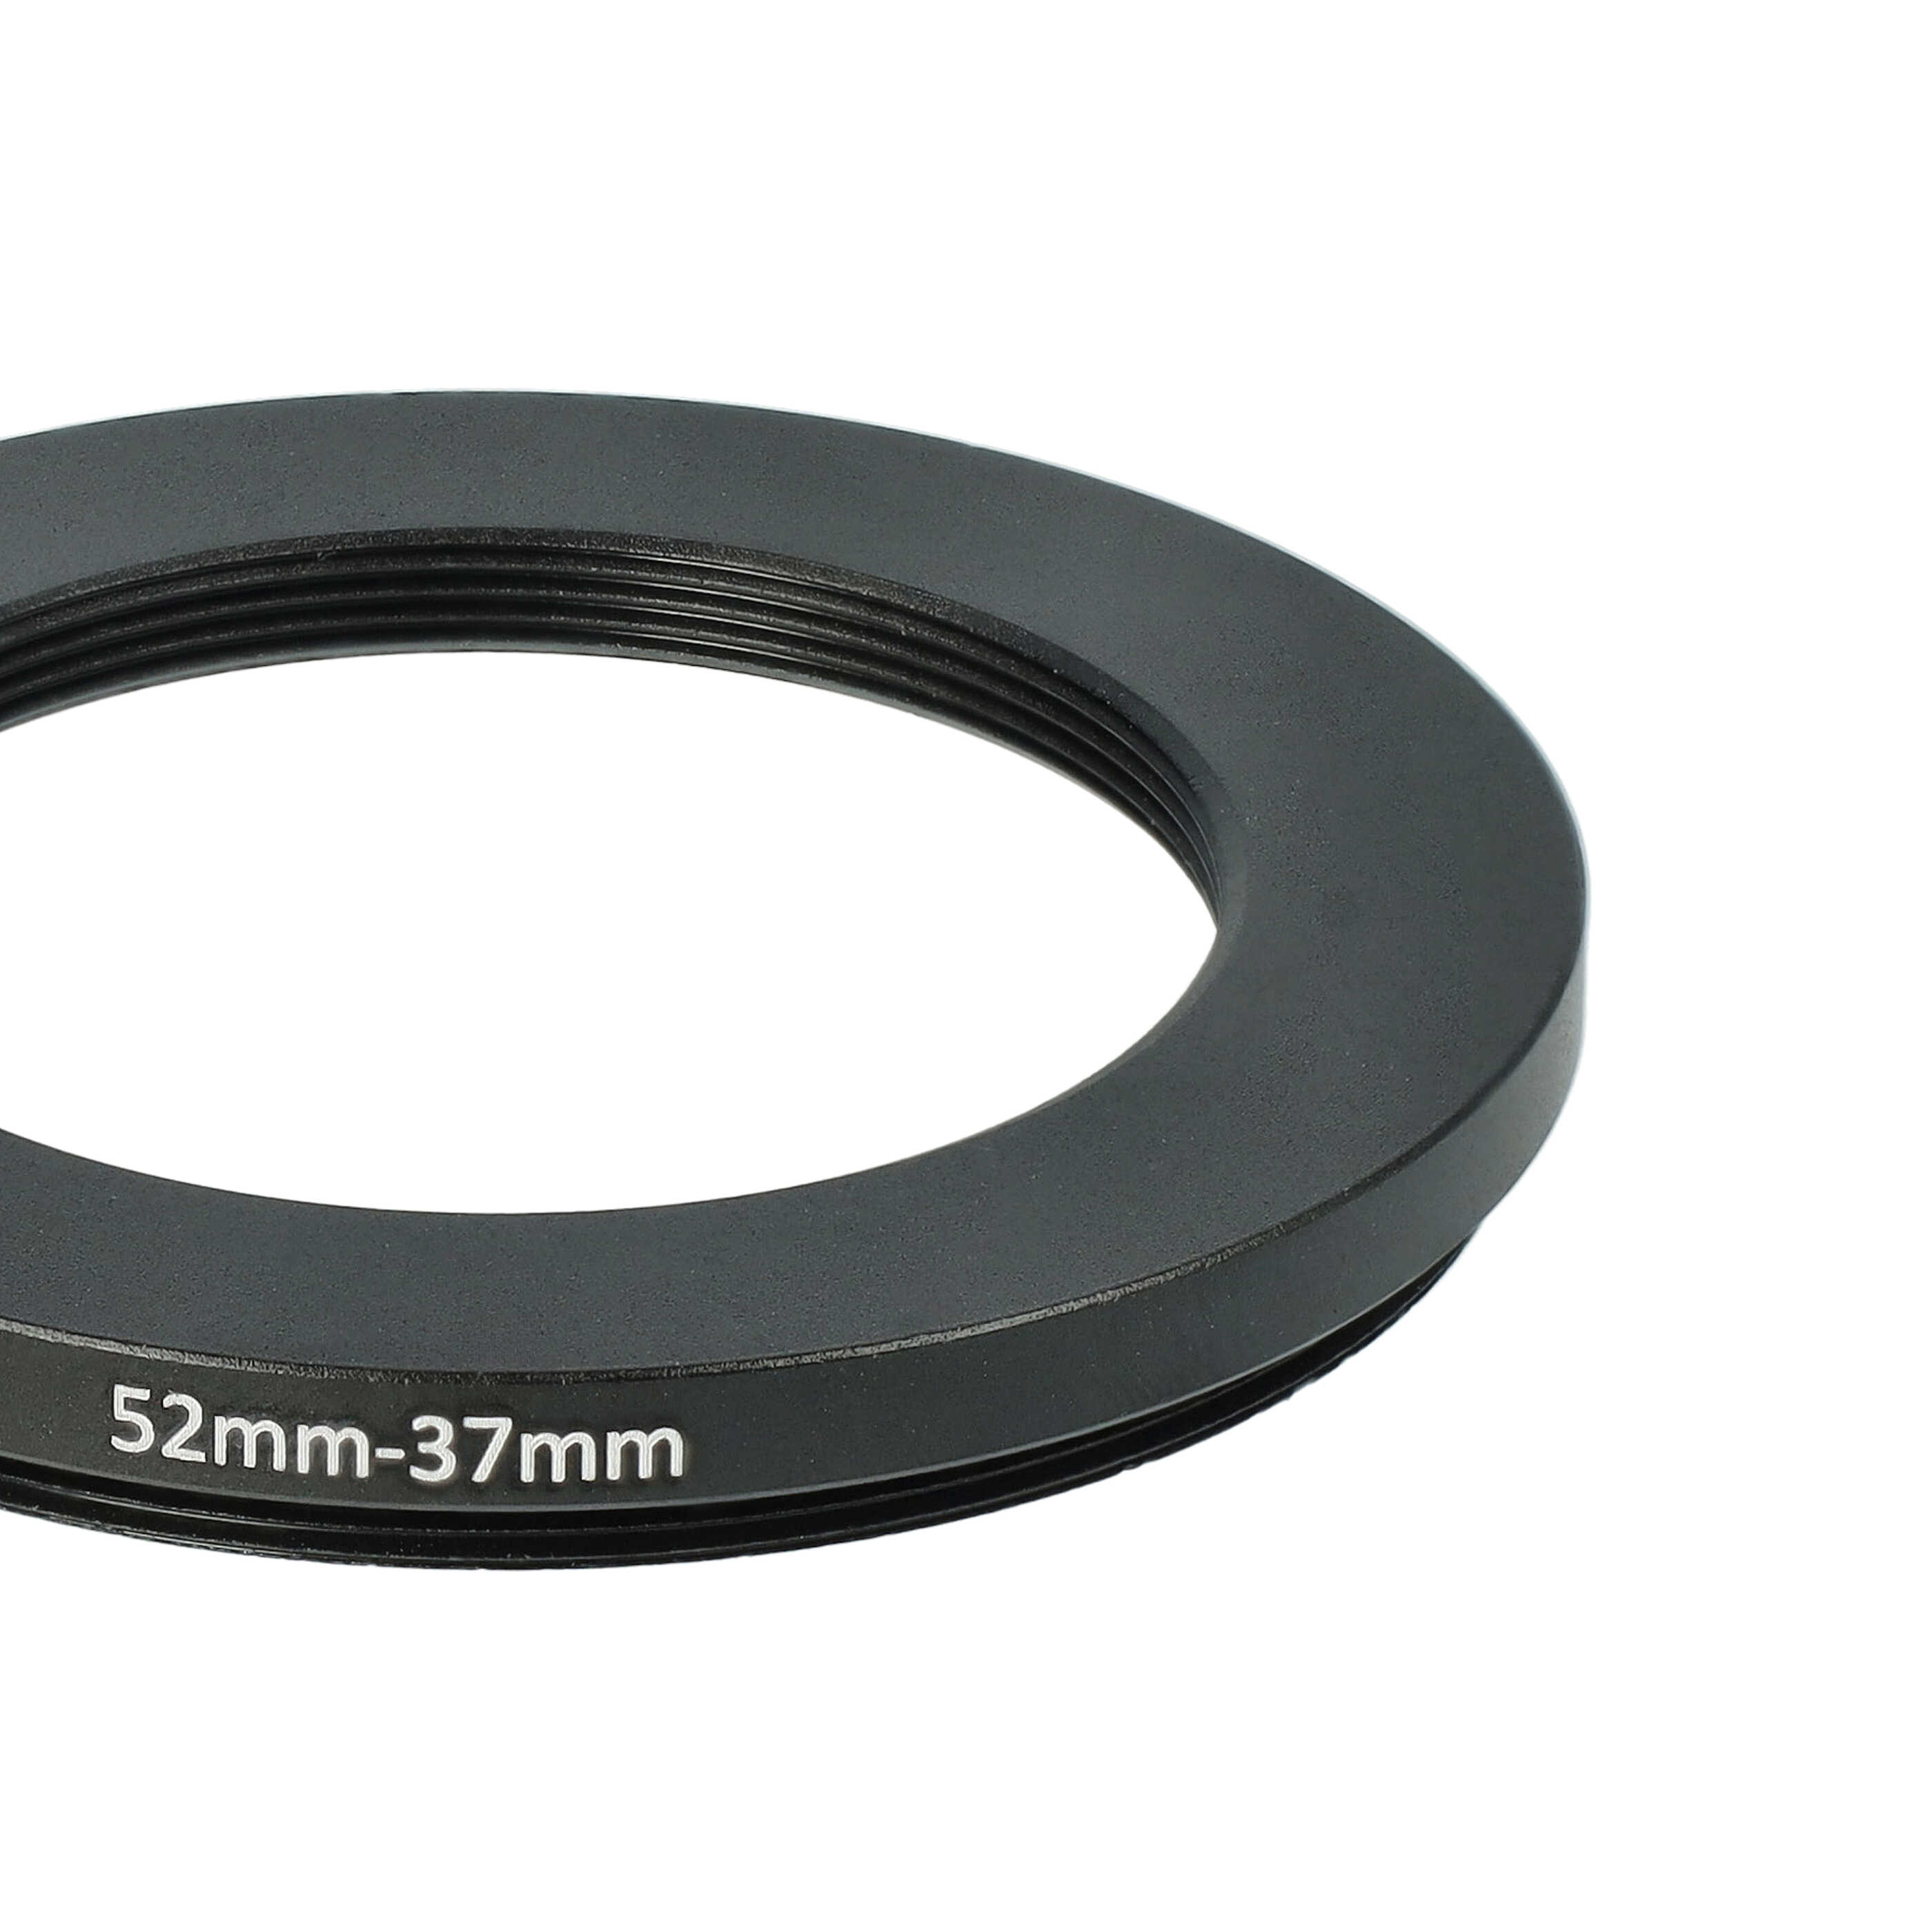 Adattatore step-down da 52 mm a 37 mm per vari obiettivi di fotocamere